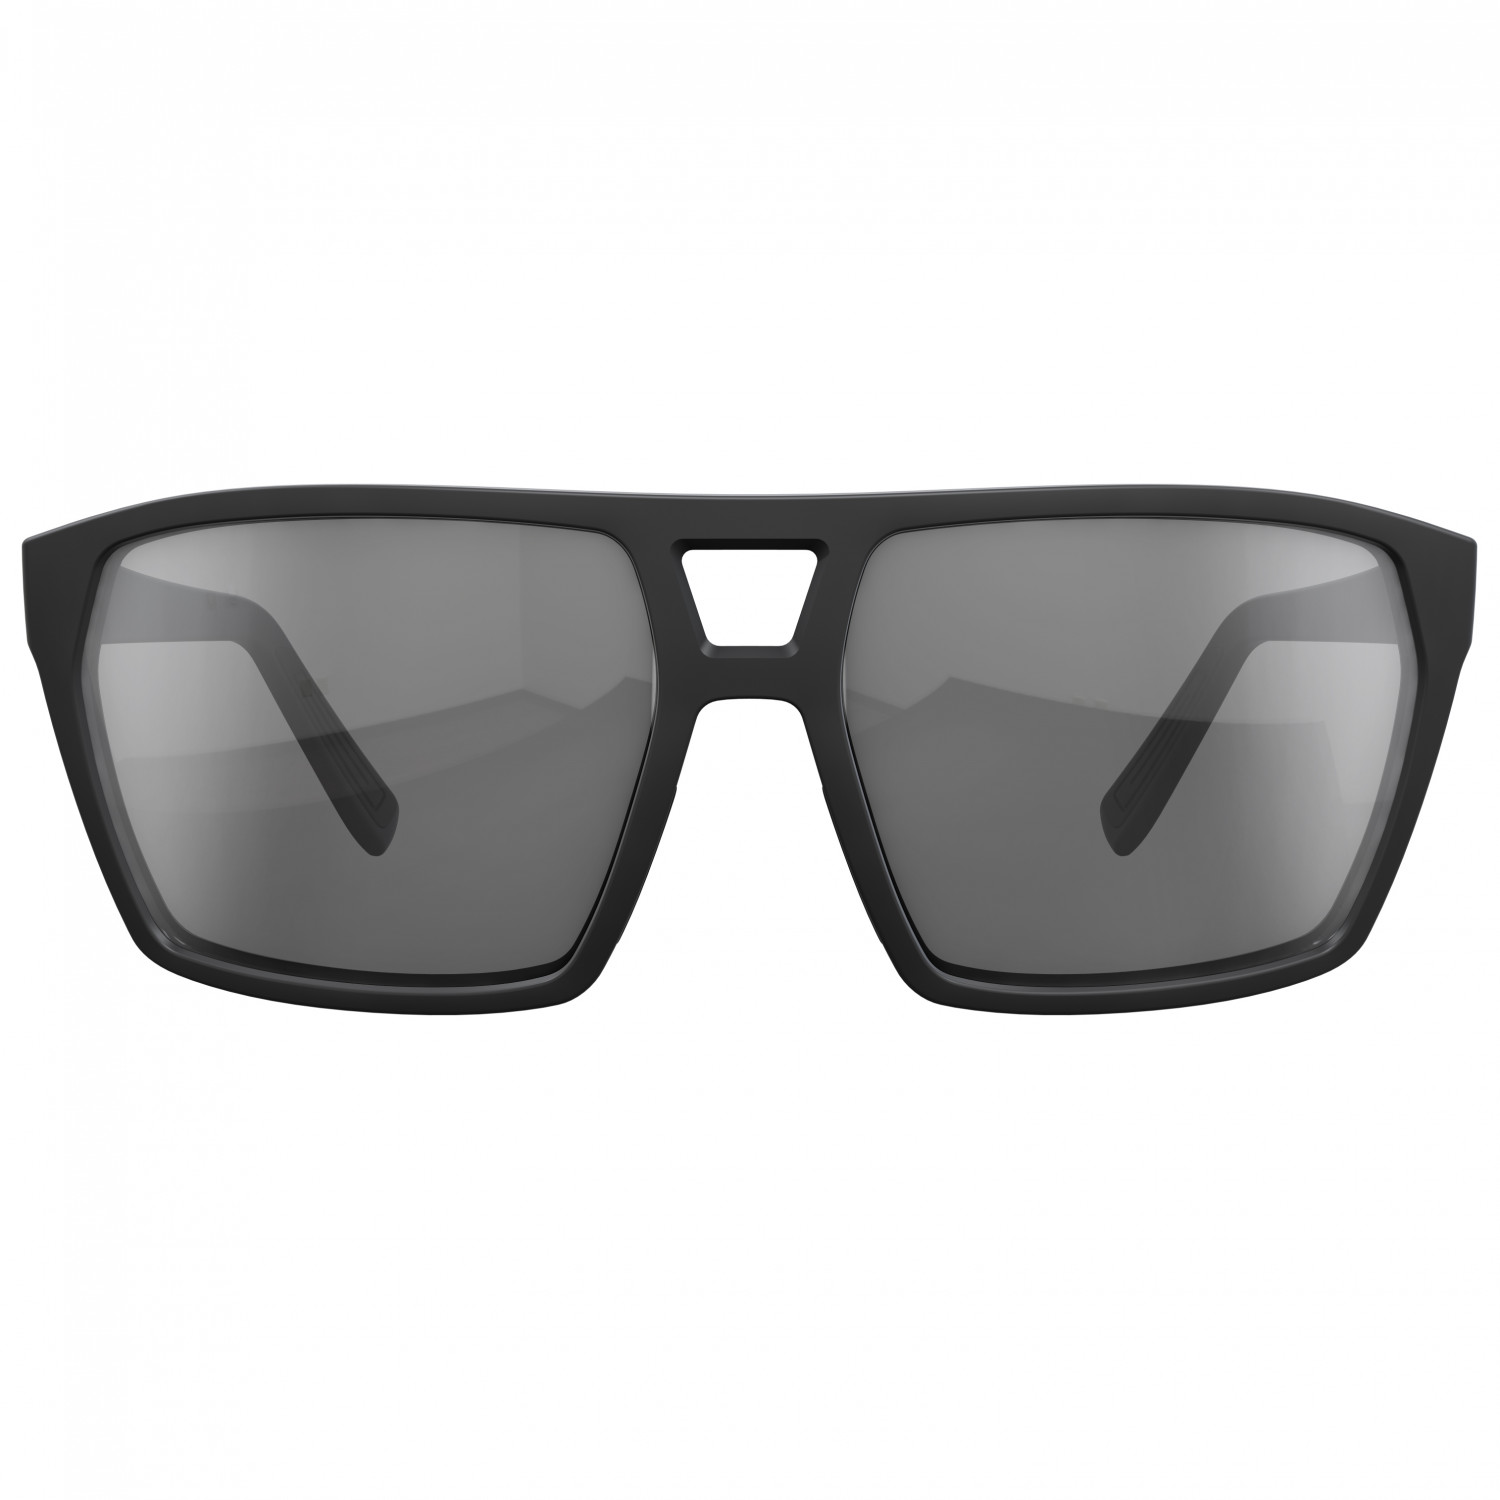 Солнцезащитные очки Scott Tune S3 (VLT 11%), цвет Black Matt